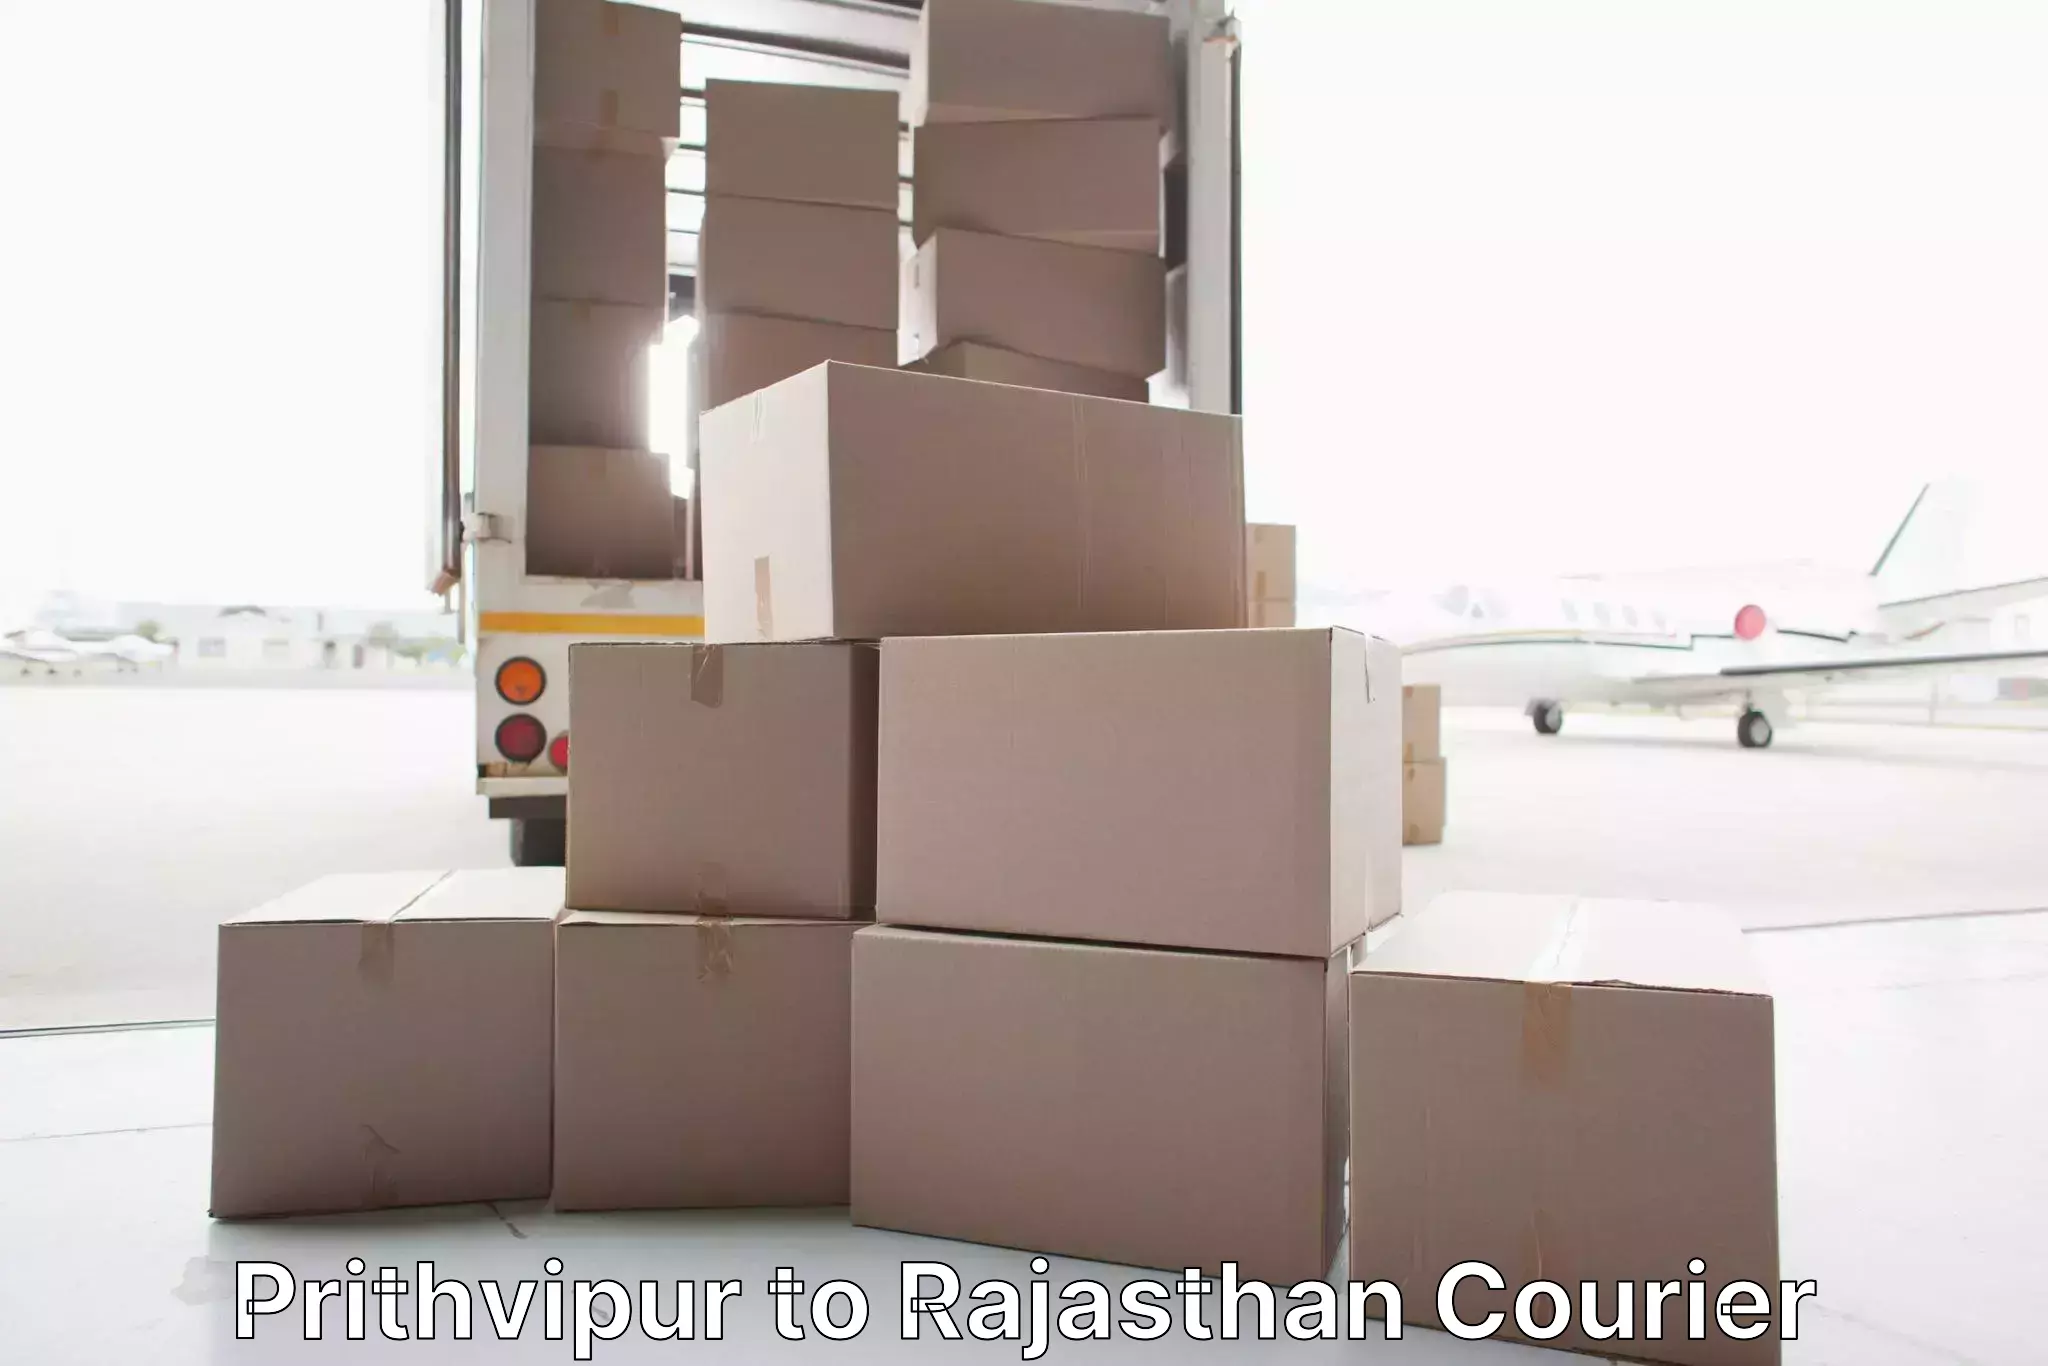 Furniture moving experts Prithvipur to Sagwara